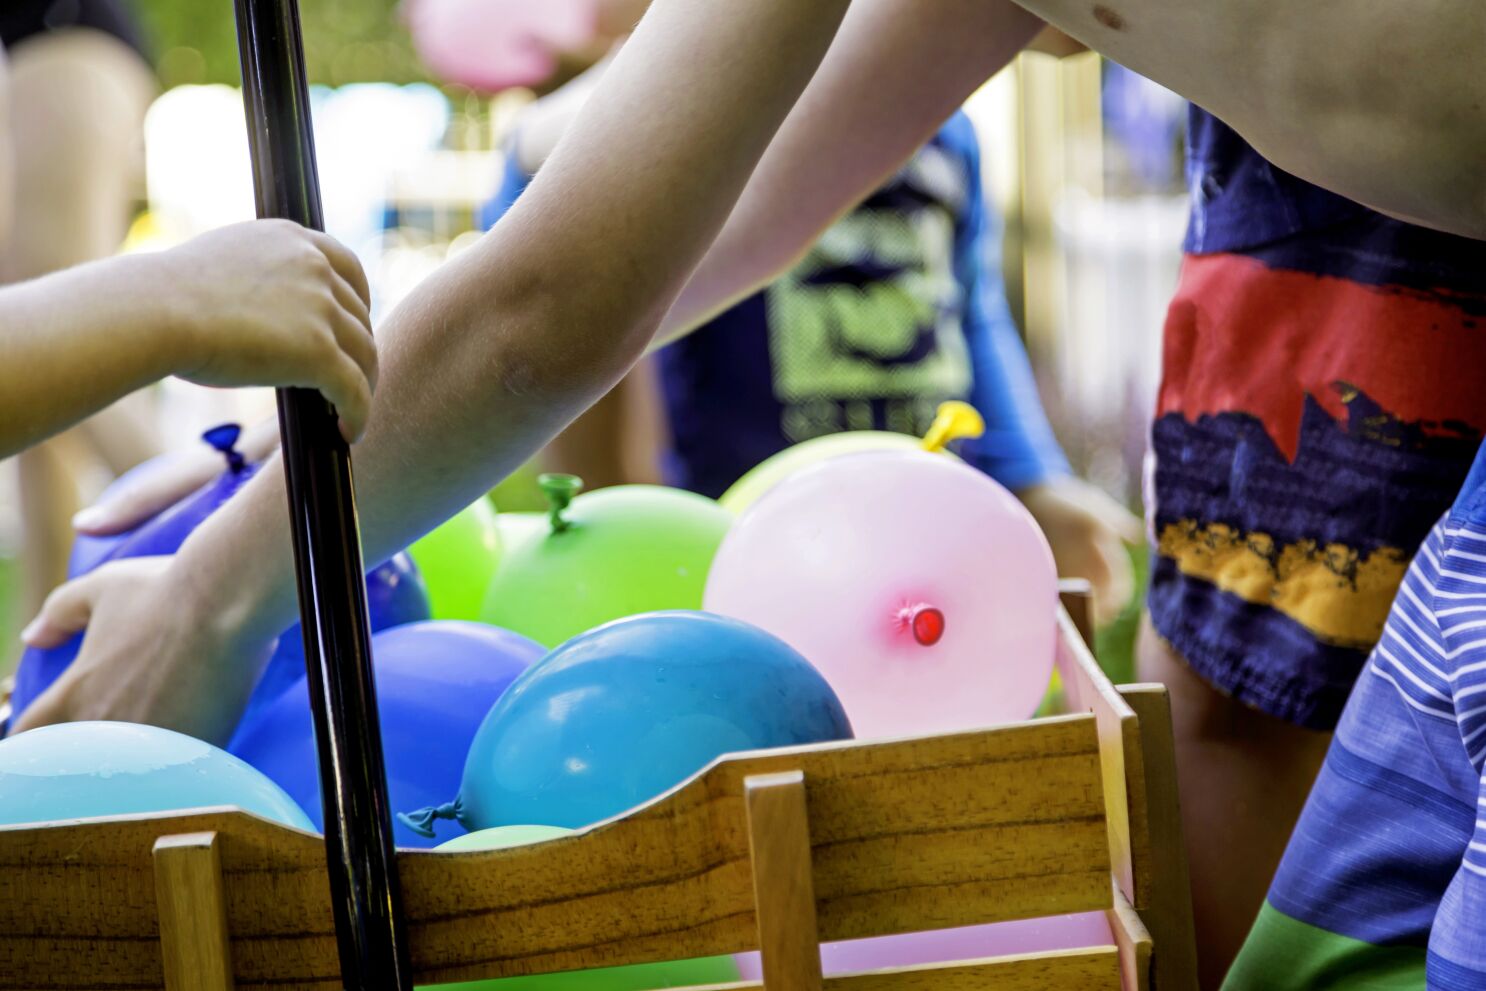 Битва шарами. Битва водяными шарами. Конкурсы с водяными бомбочками. Игра с водяными шарами для детей. Игры с водяными бомбочками для детей на улице летом.